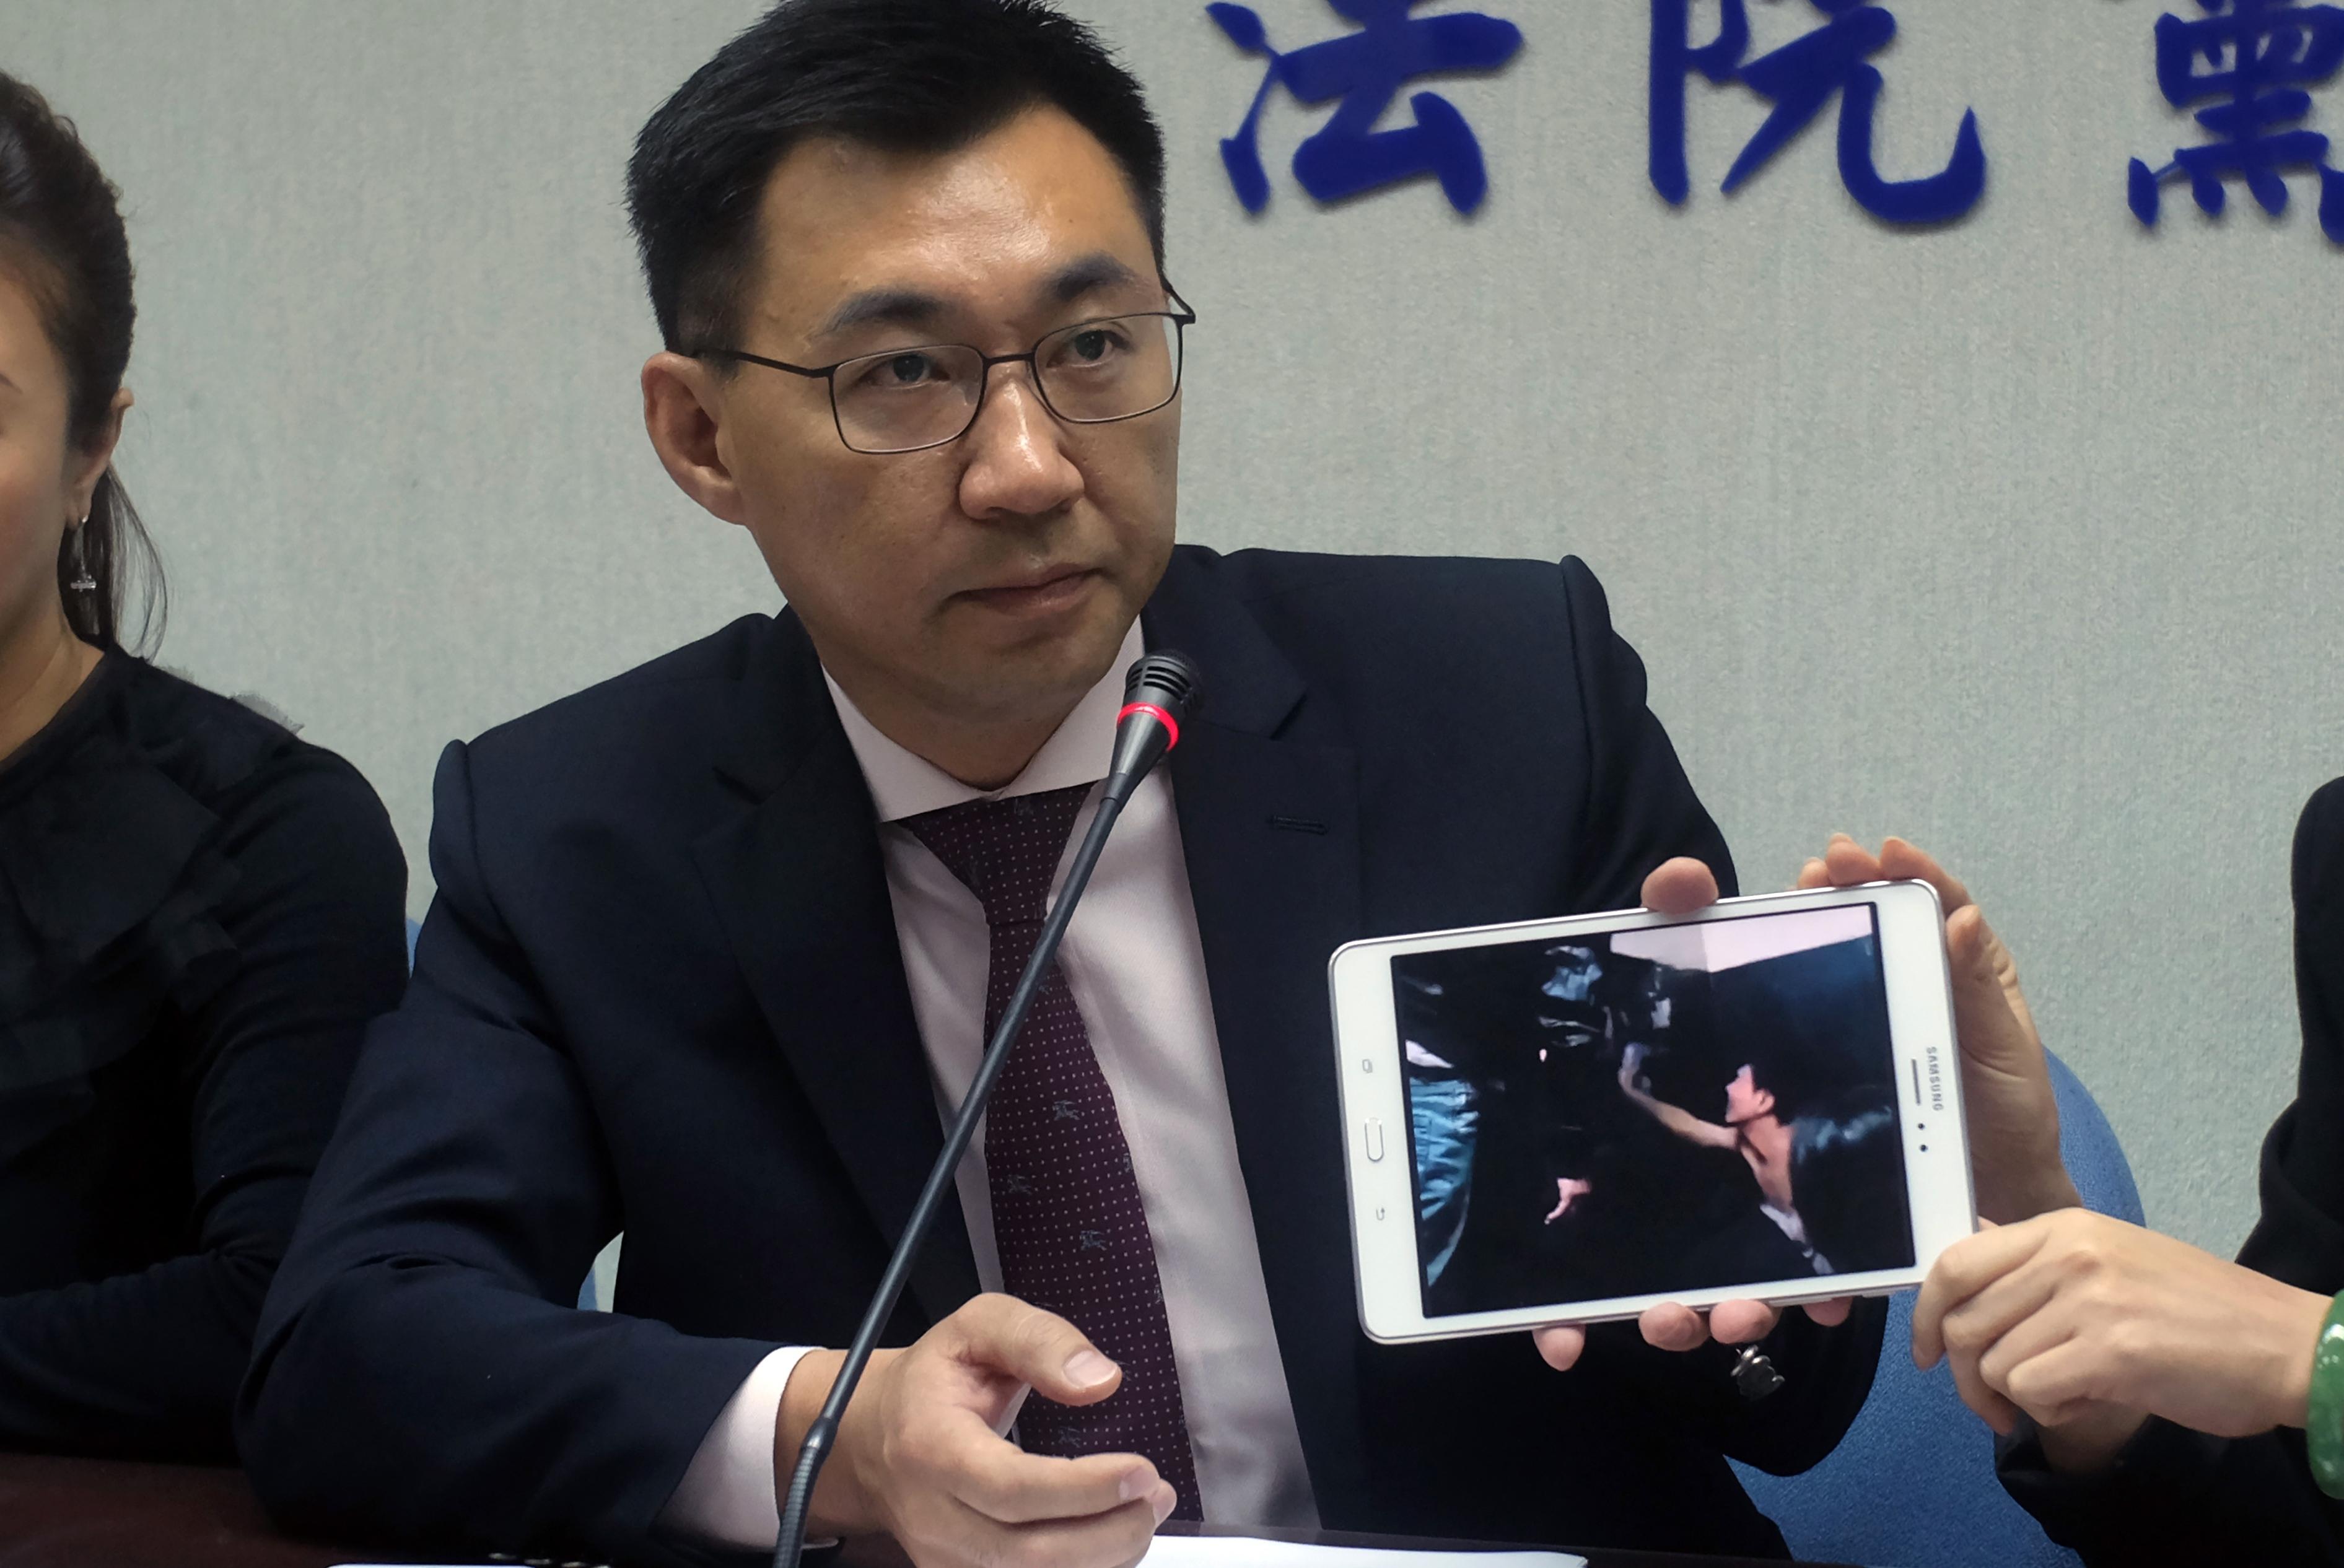 Taiwanesiske parlamentsledamoten Johnny Chiang visar upp en bild på taiwanesiska medborgare som deporterades från Kenya till Folkrepubliken Kina, anklagade för telekombedrägerier. Fallet har lett till en dispyt mellan Taiwan och Kina, och nu har Kina visat upp fler av de misstänkta som "erkänner" på statlig tv.  (Foto: Sam Yeh/AFP/Getty Images)